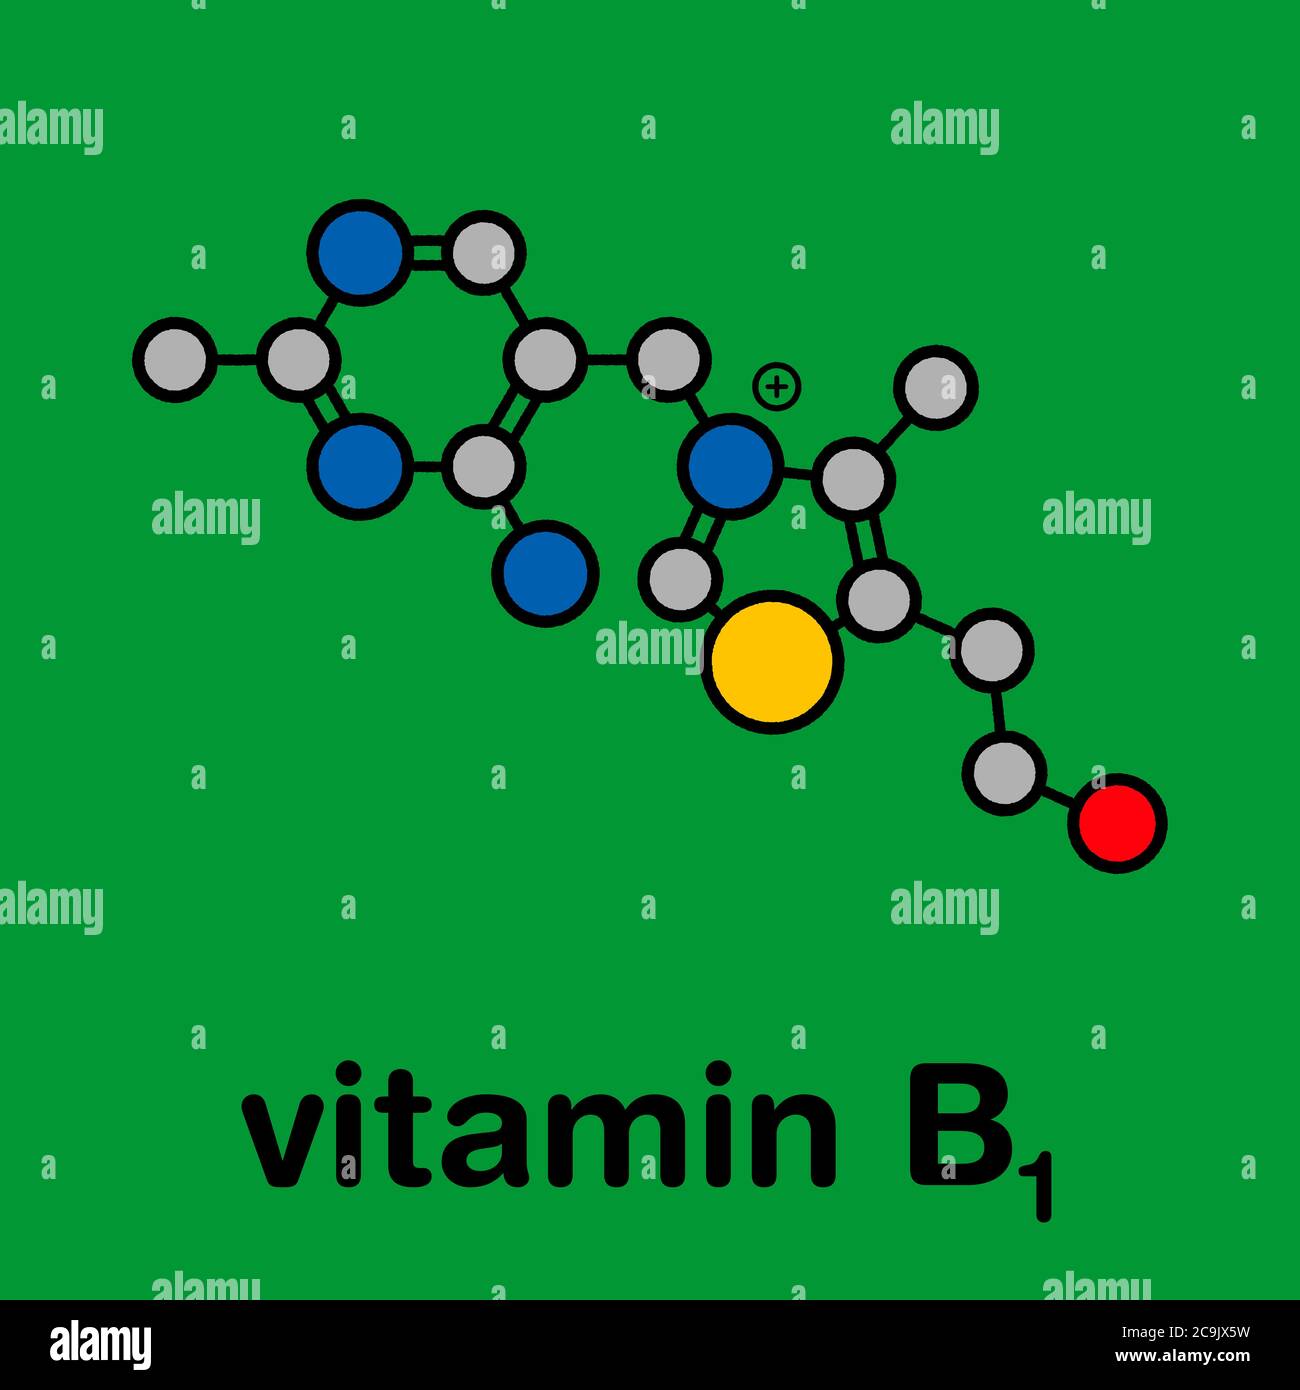 Molécula De Vitamina B1 Tiamina Fórmula Esquelética Estilizada Estructura Química Los 4193